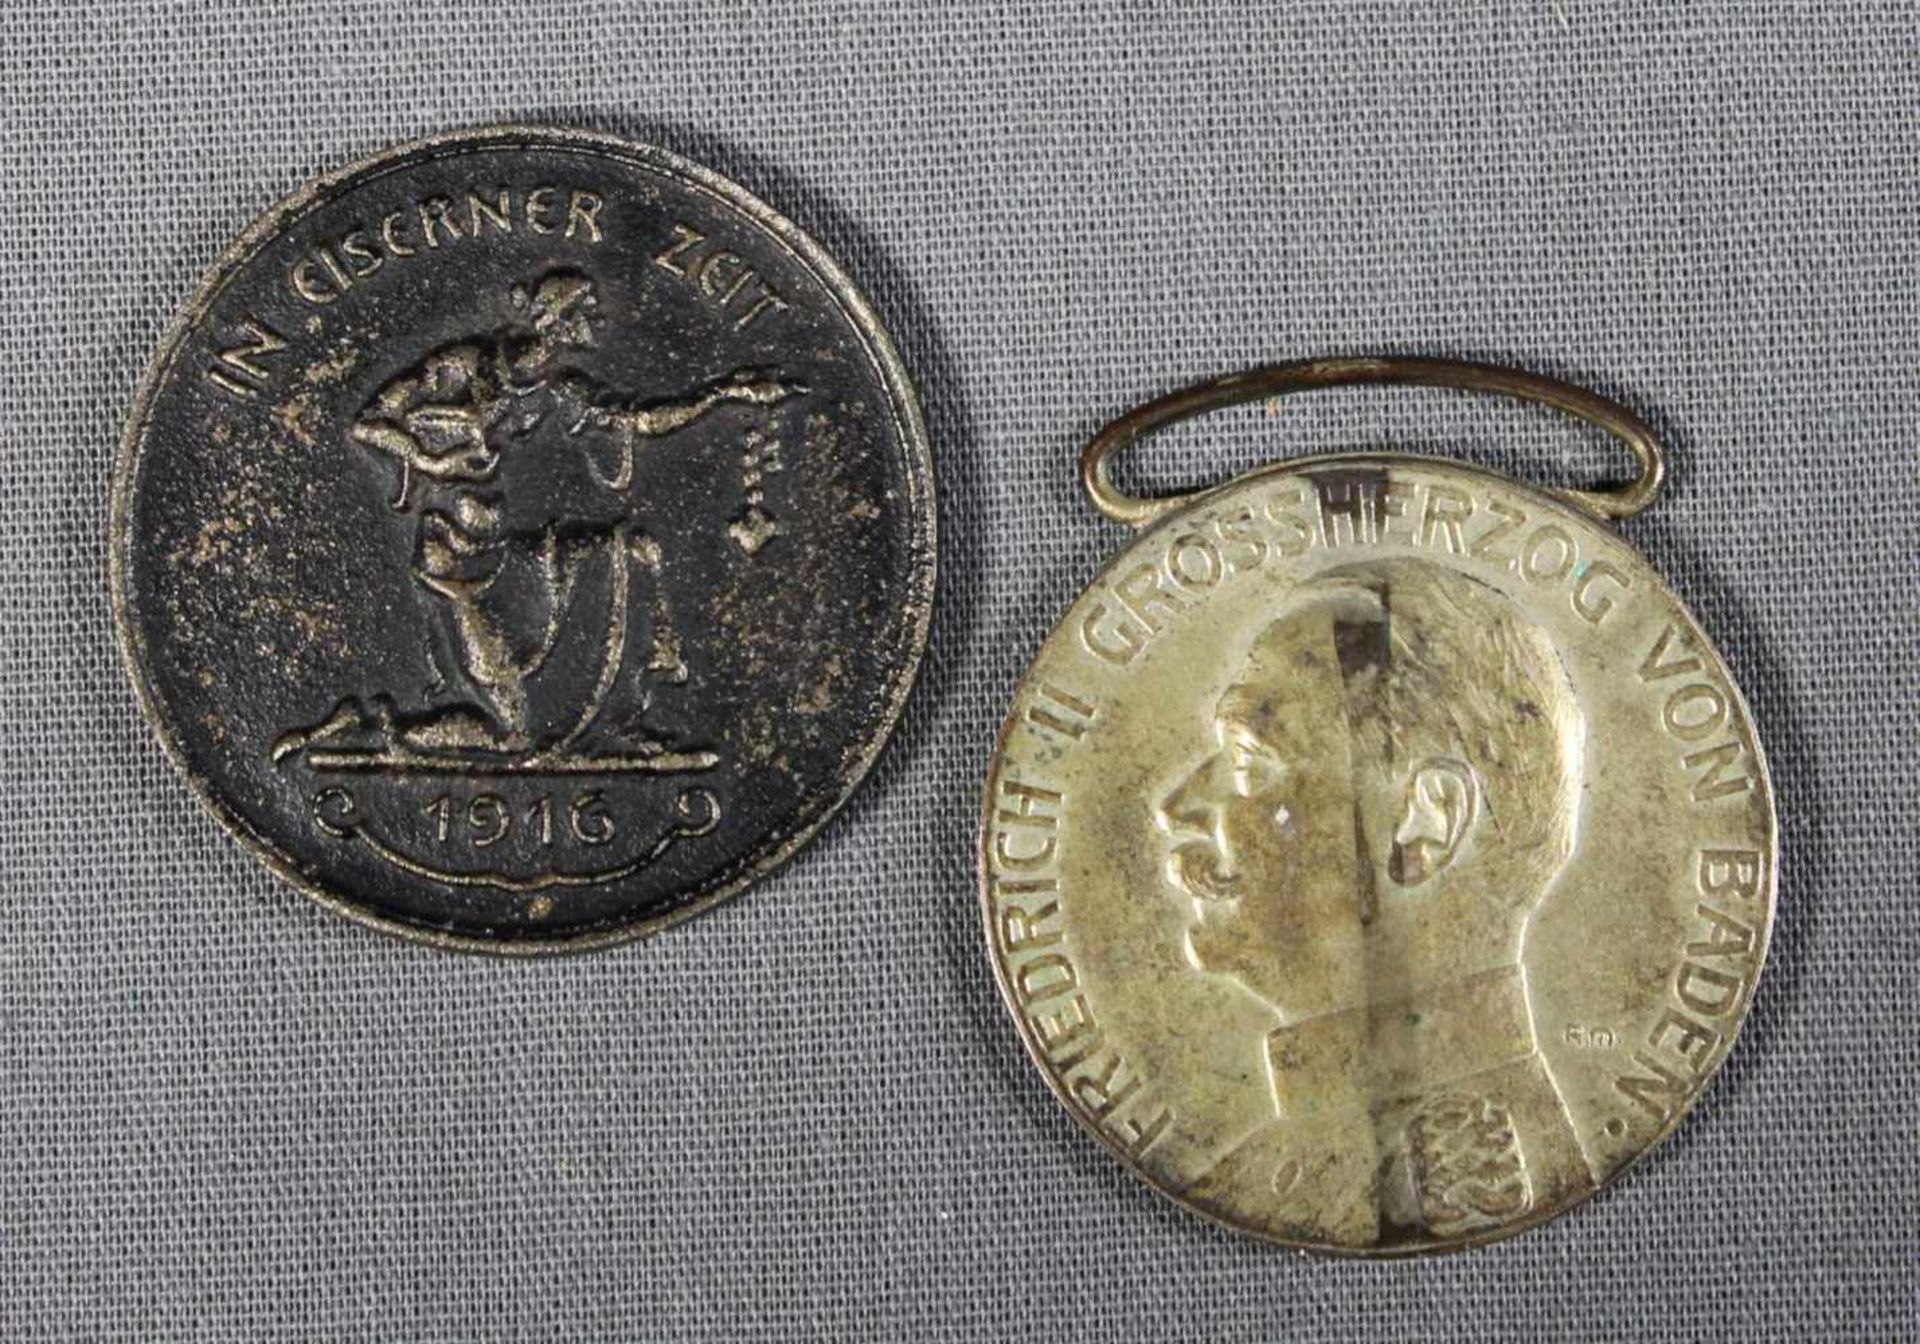 2 Medaillen; 1 silberne Verdienstmedaille Friedrich II. Grossherzog von Baden und 1 Medaille „in